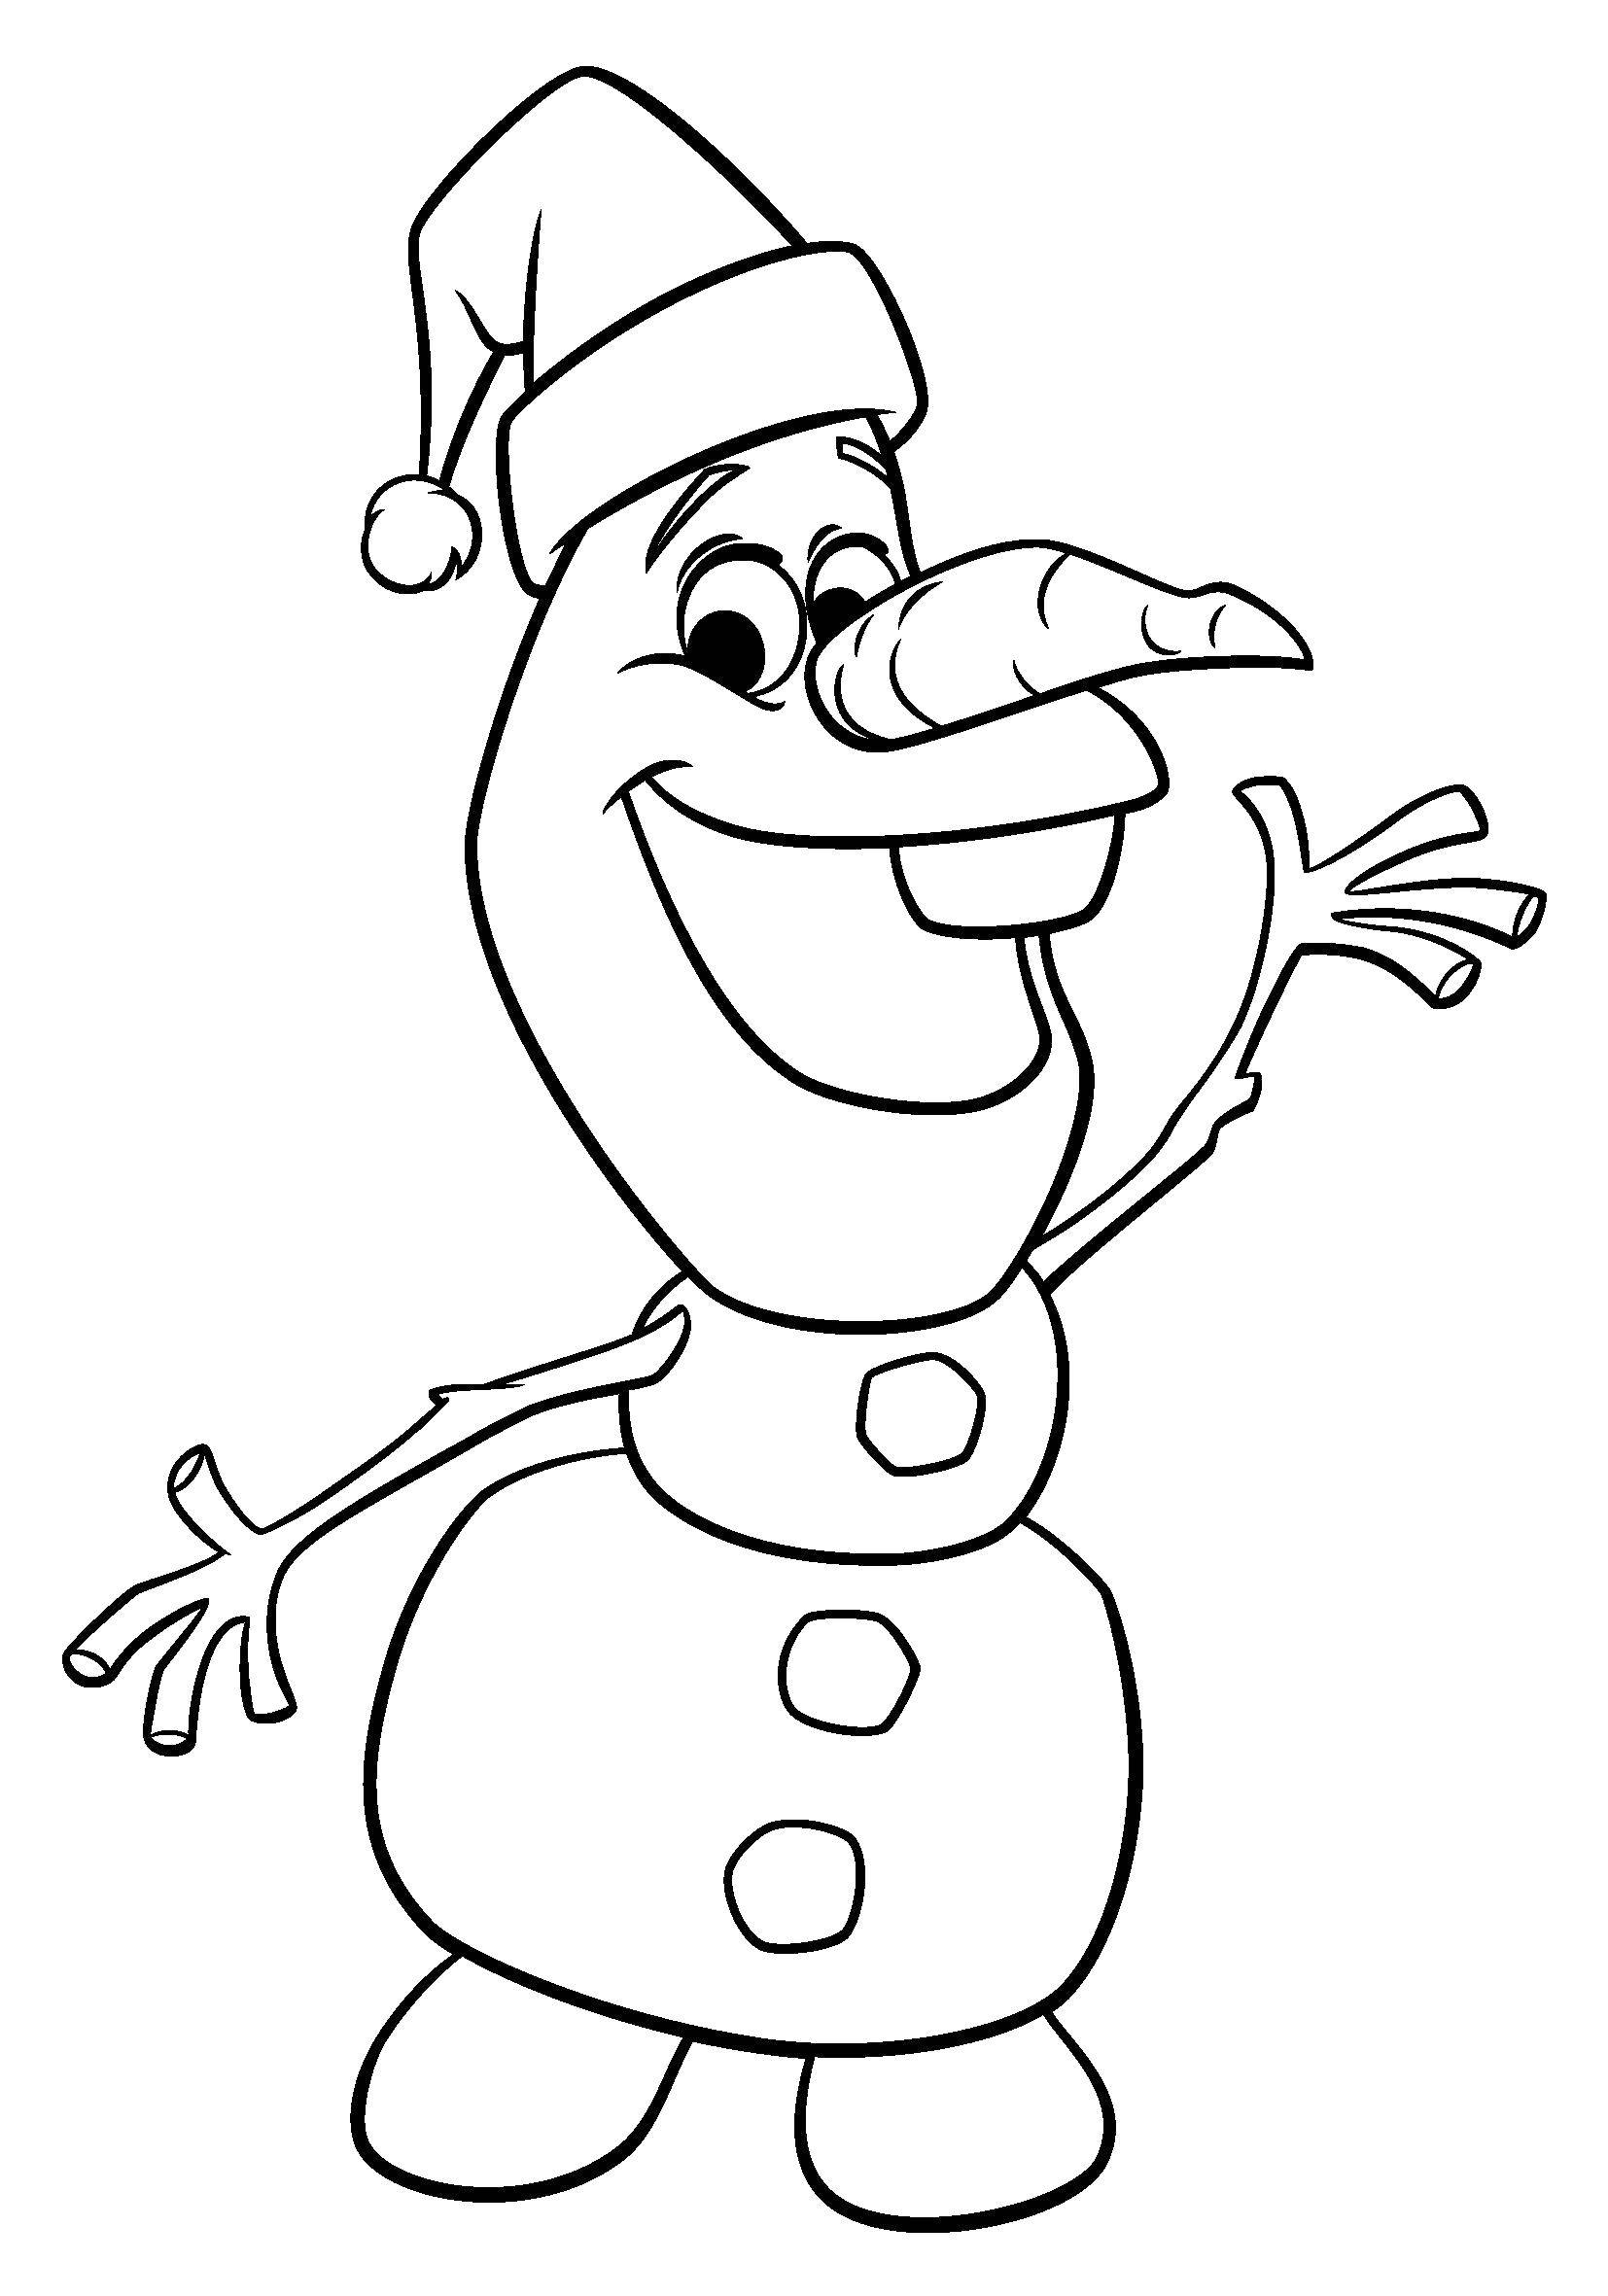 Раскраски для девочек и мальчиков по мультфильму Холодное сердце  Снеговик из мультфильма .